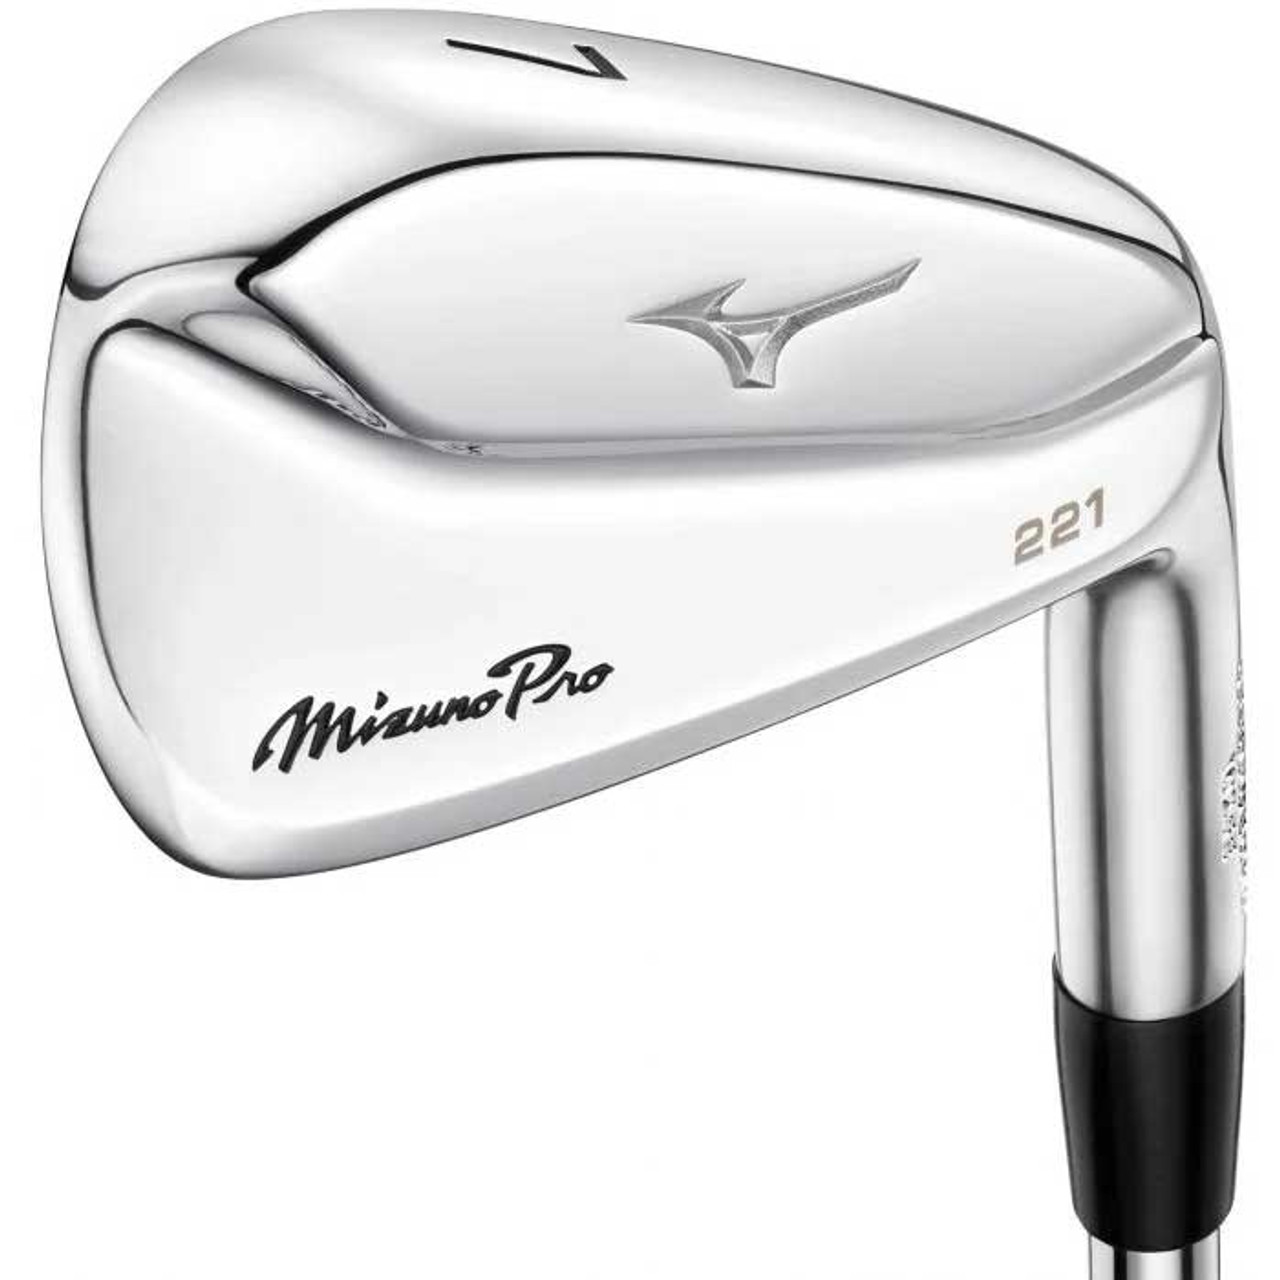 New Mizuno Pro 221 Irons Dallas Golf Company